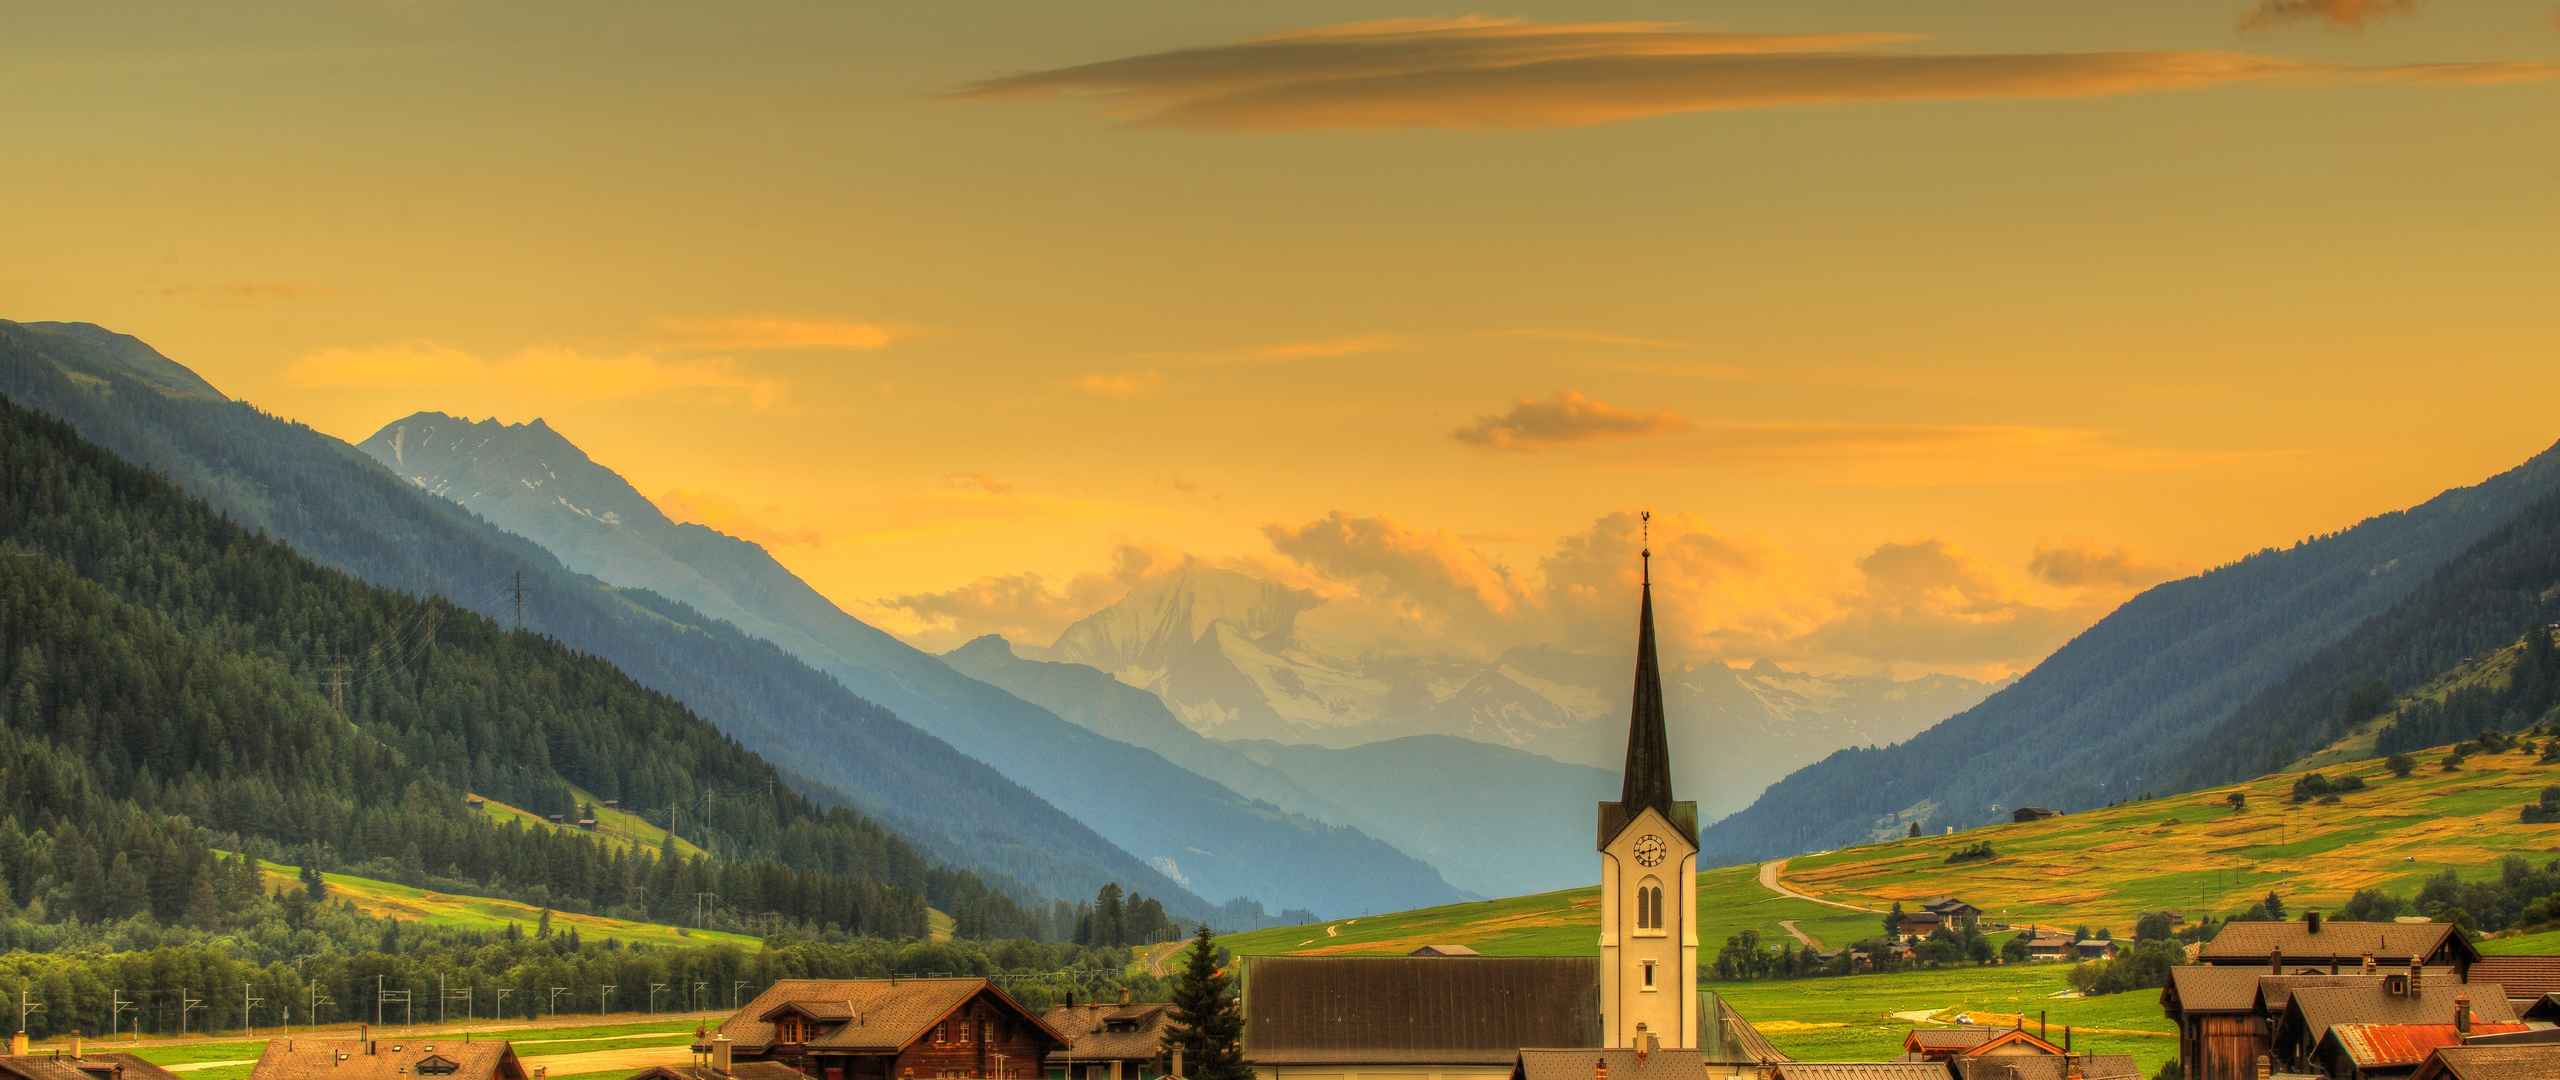 瑞士小镇风景壁纸